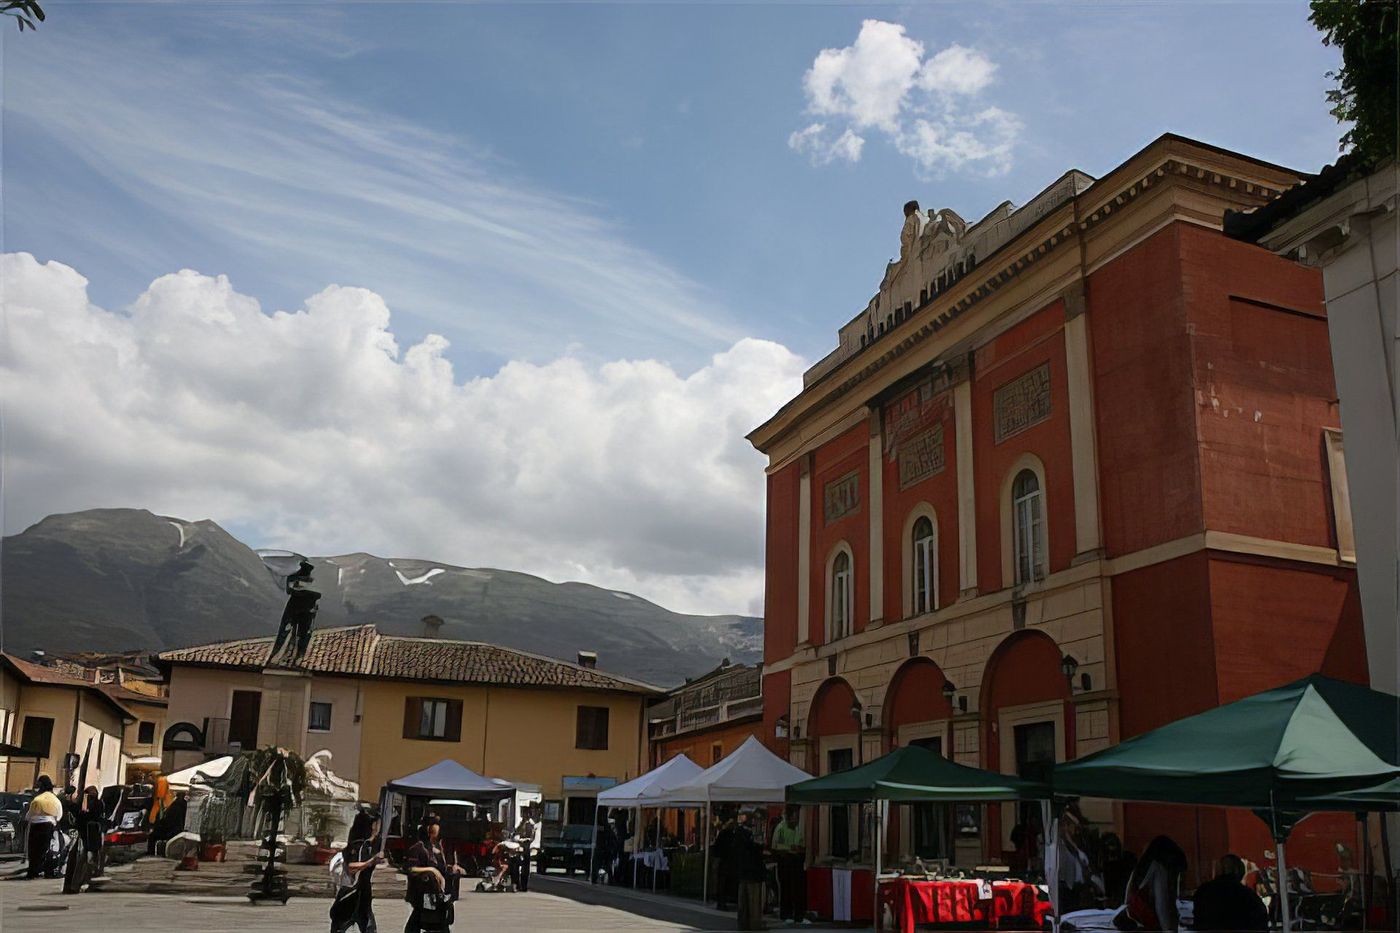 Piazza Veneto